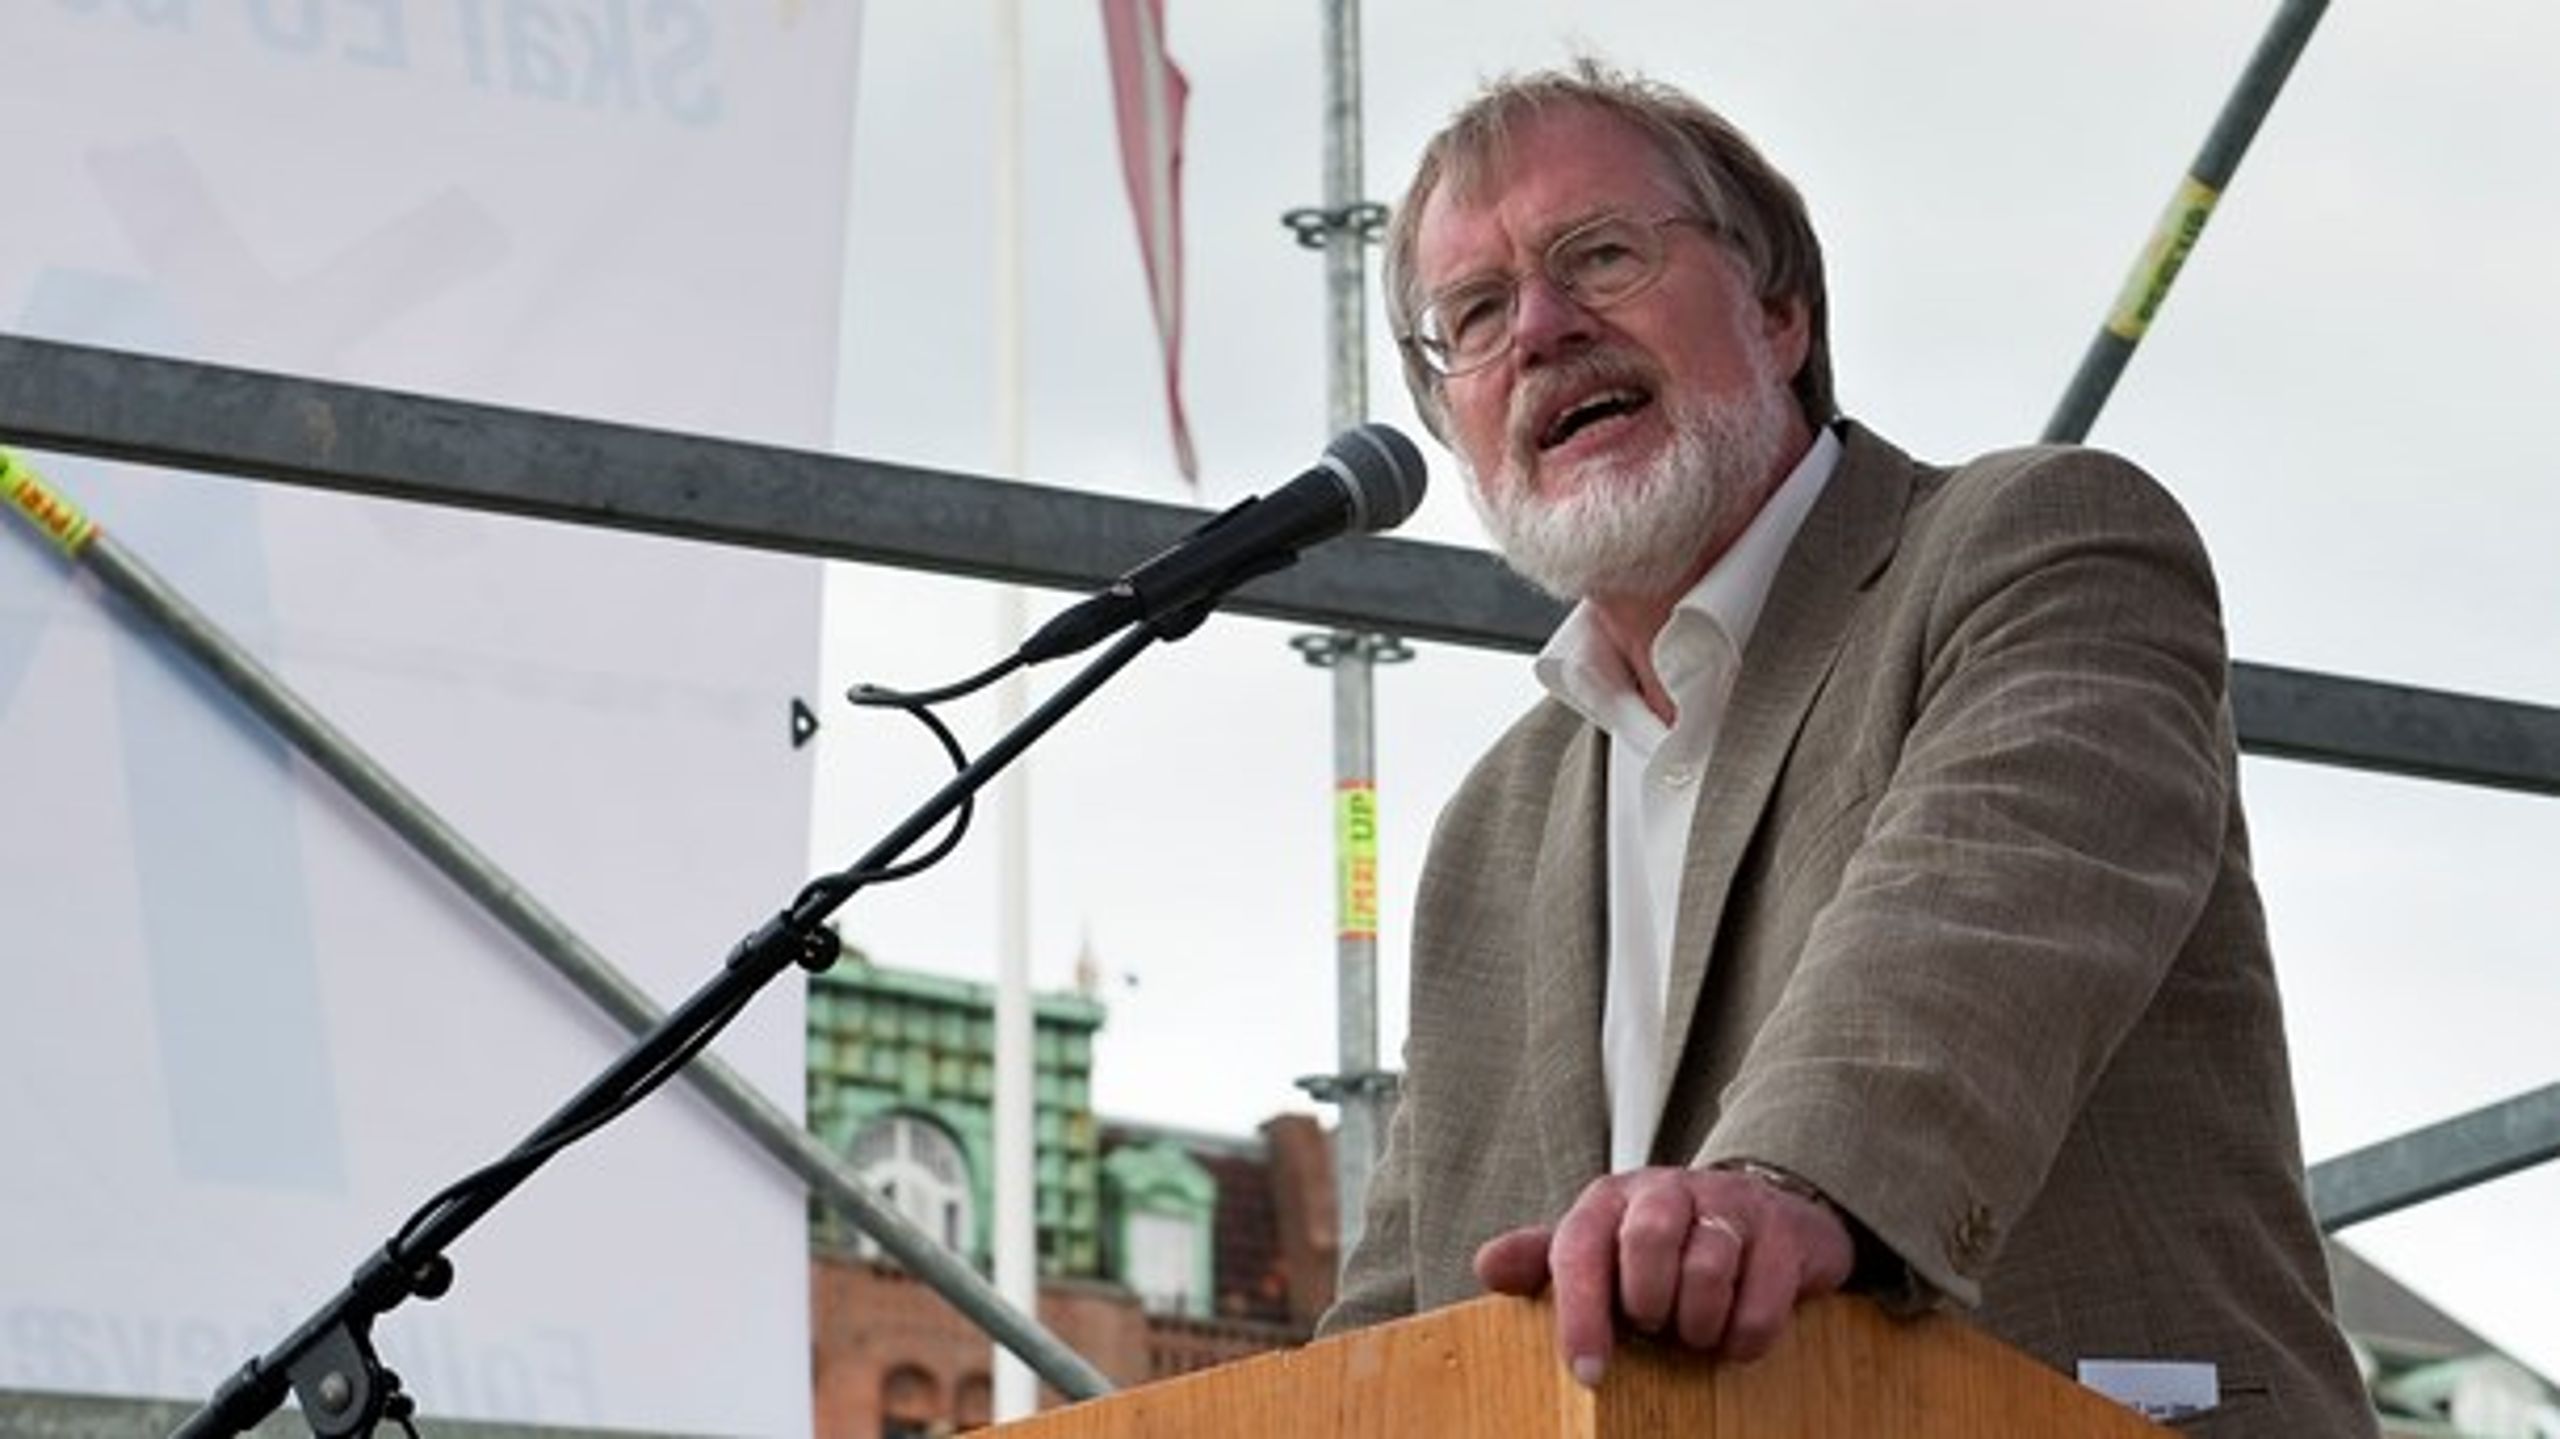 Jørgen Grøn har i flere år støttet Folkebevægelsen mod EU. Nu har det ført til hans eksklusion fra SF.